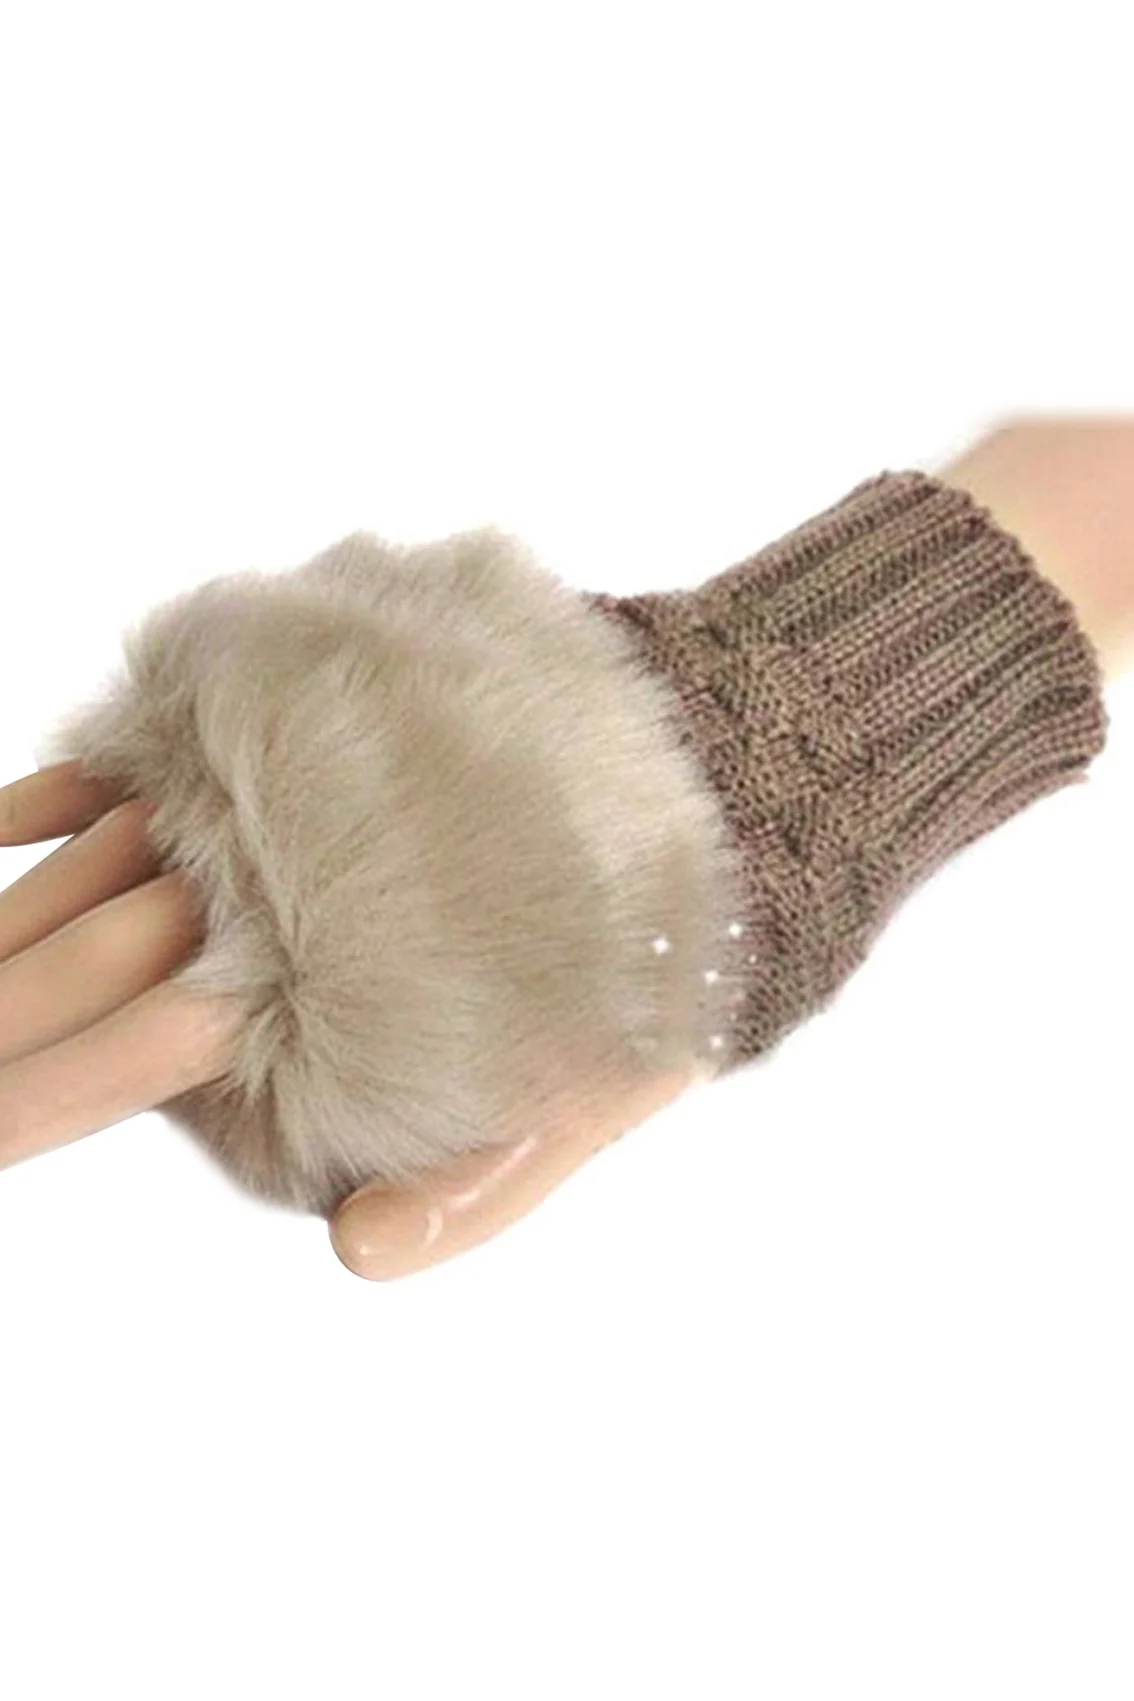 Imc женский Стиль Мода Кролик Мех животных запястье руки Зимние перчатки короткие Прихватки для мангала (верблюд)